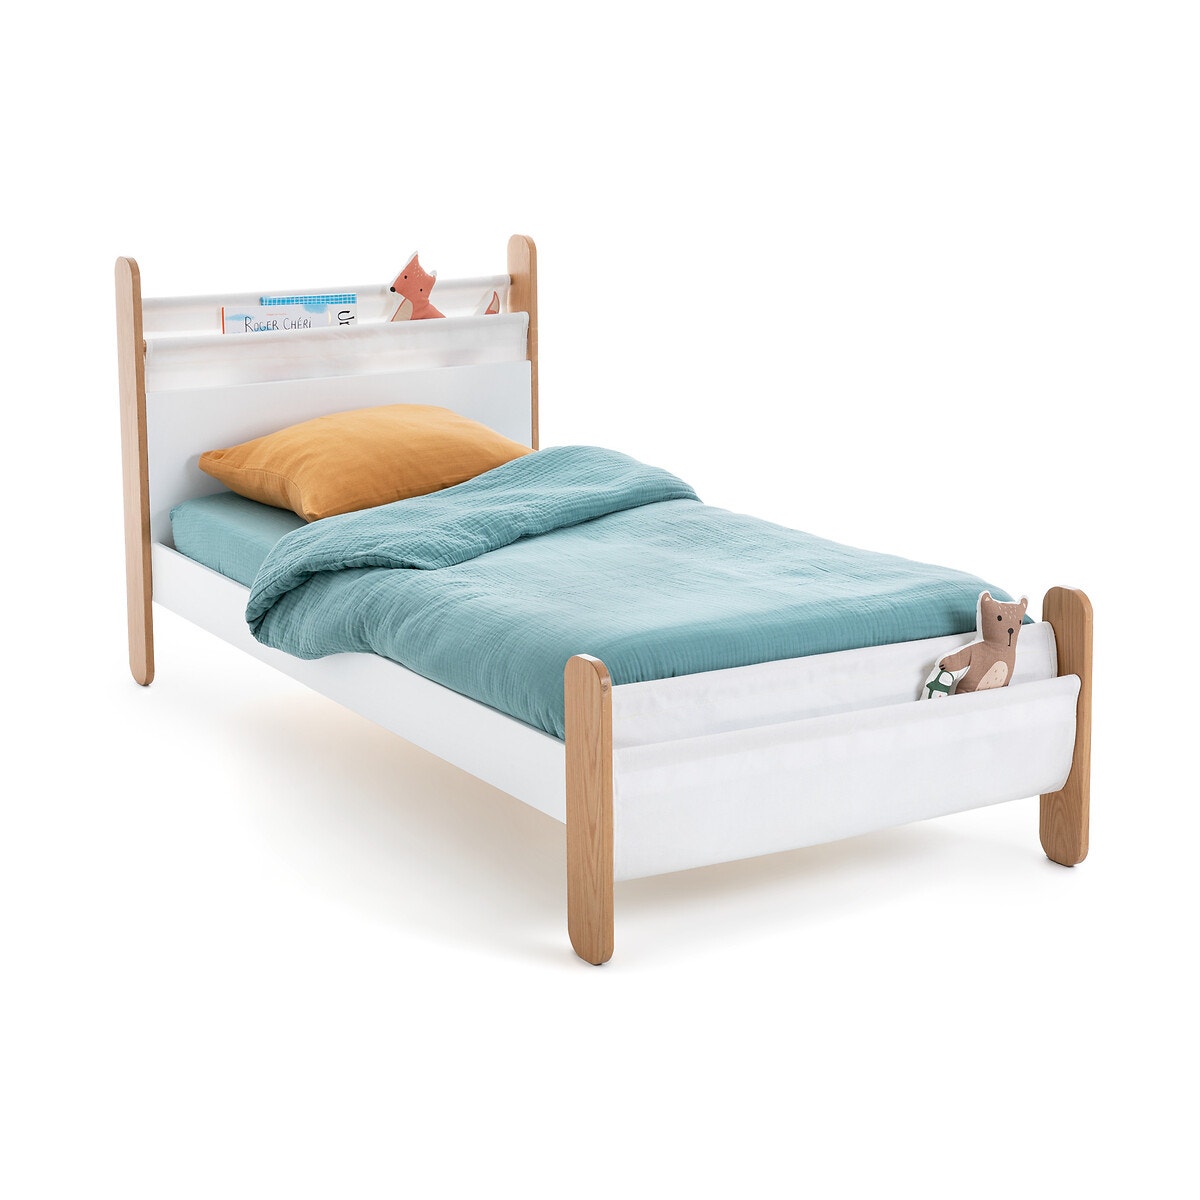 Κρεβάτι με τάβλες και τσέπες αποθήκευσης, Nadéon